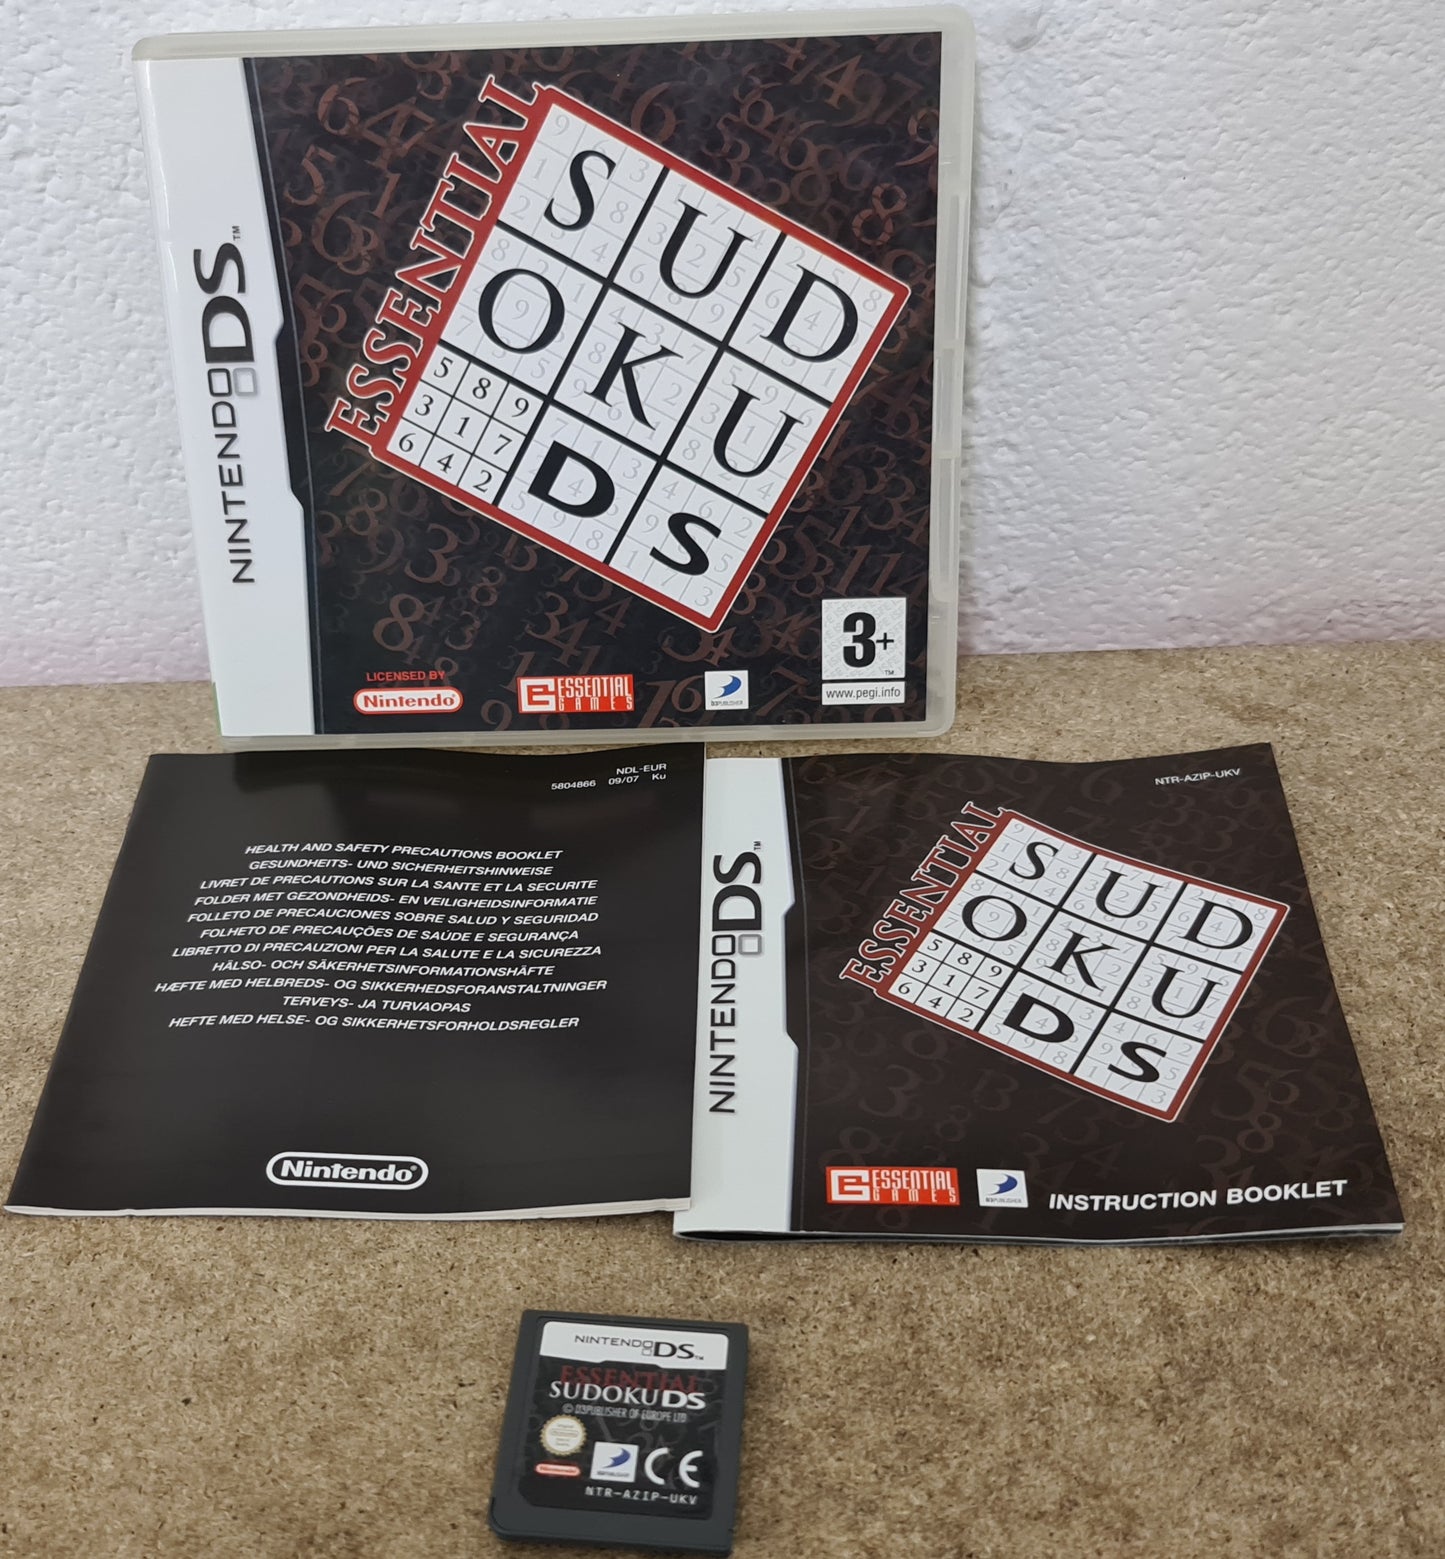 Essential Sudoku Nintendo DS Game